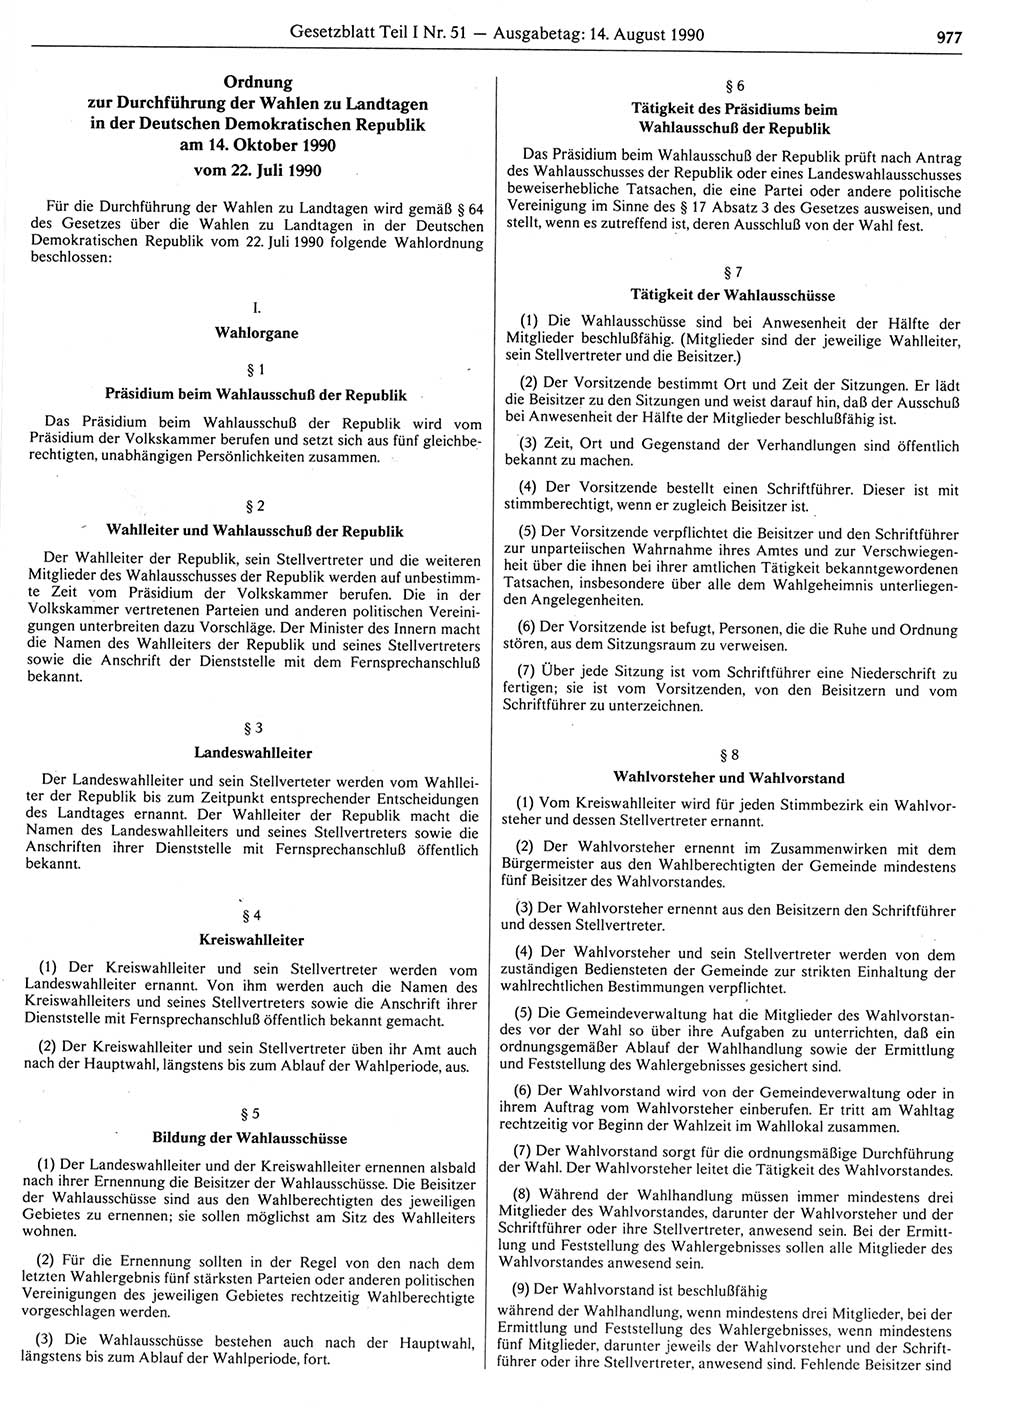 Gesetzblatt (GBl.) der Deutschen Demokratischen Republik (DDR) Teil Ⅰ 1990, Seite 977 (GBl. DDR Ⅰ 1990, S. 977)